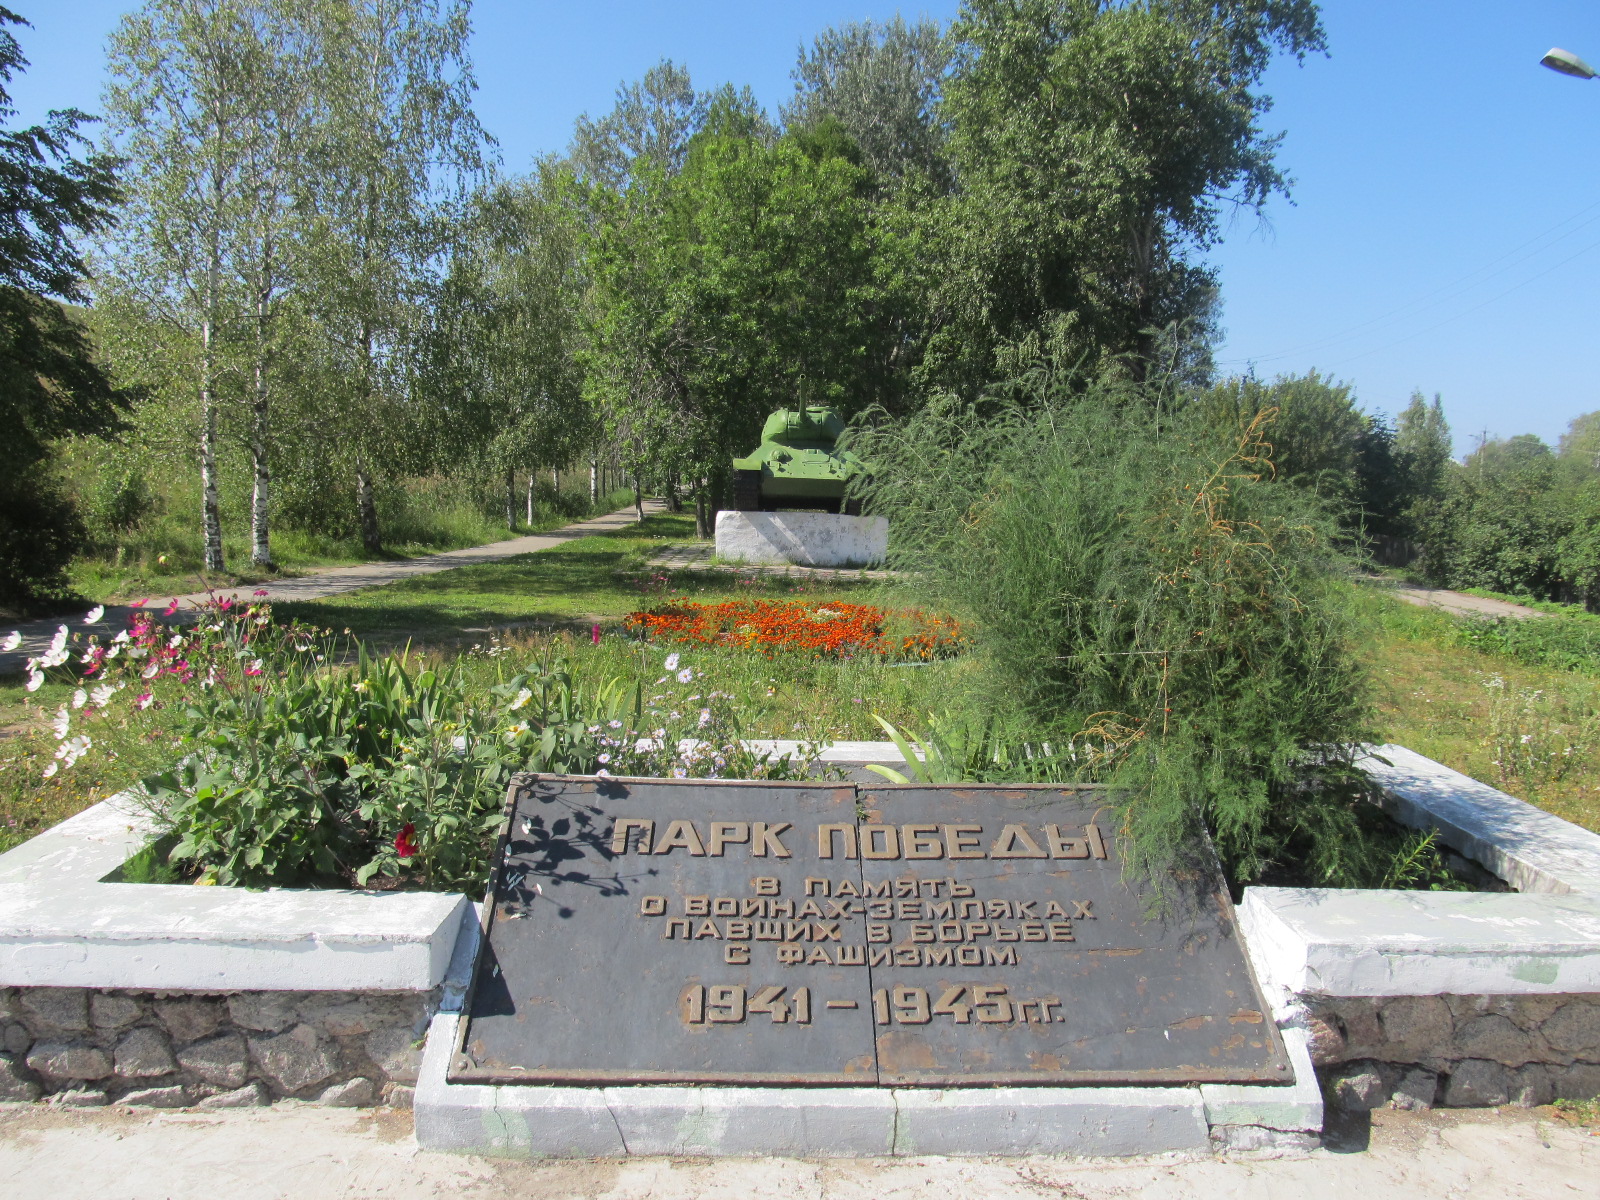 Вологодская область, г. Белозерск. Мемориал в Парке Победы у подножия крепостного вала